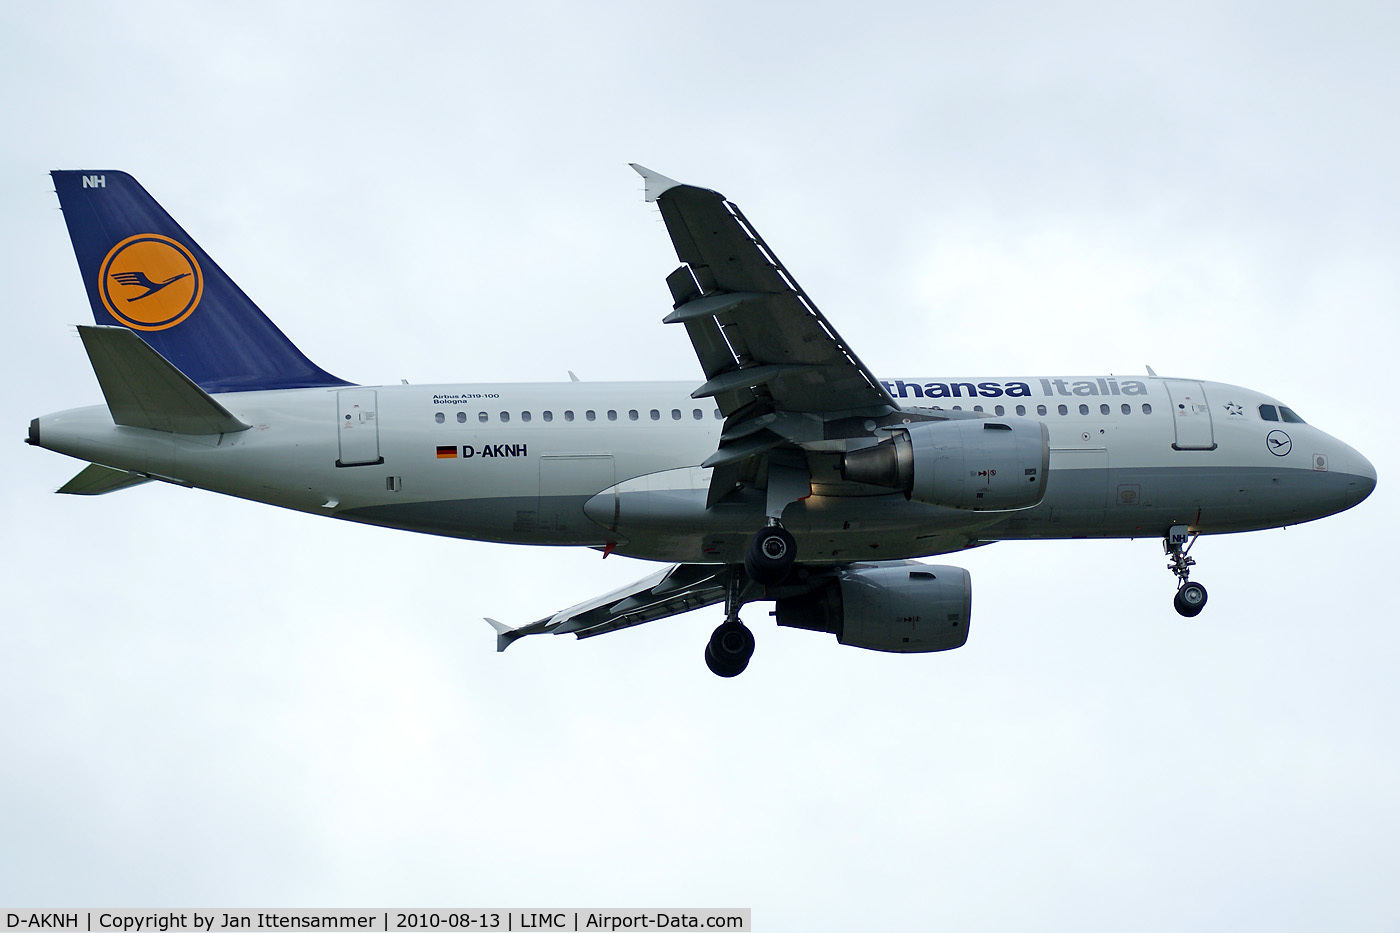 D-AKNH, 1998 Airbus A319-112 C/N 794, Lufthansa Italia @ Malpensa